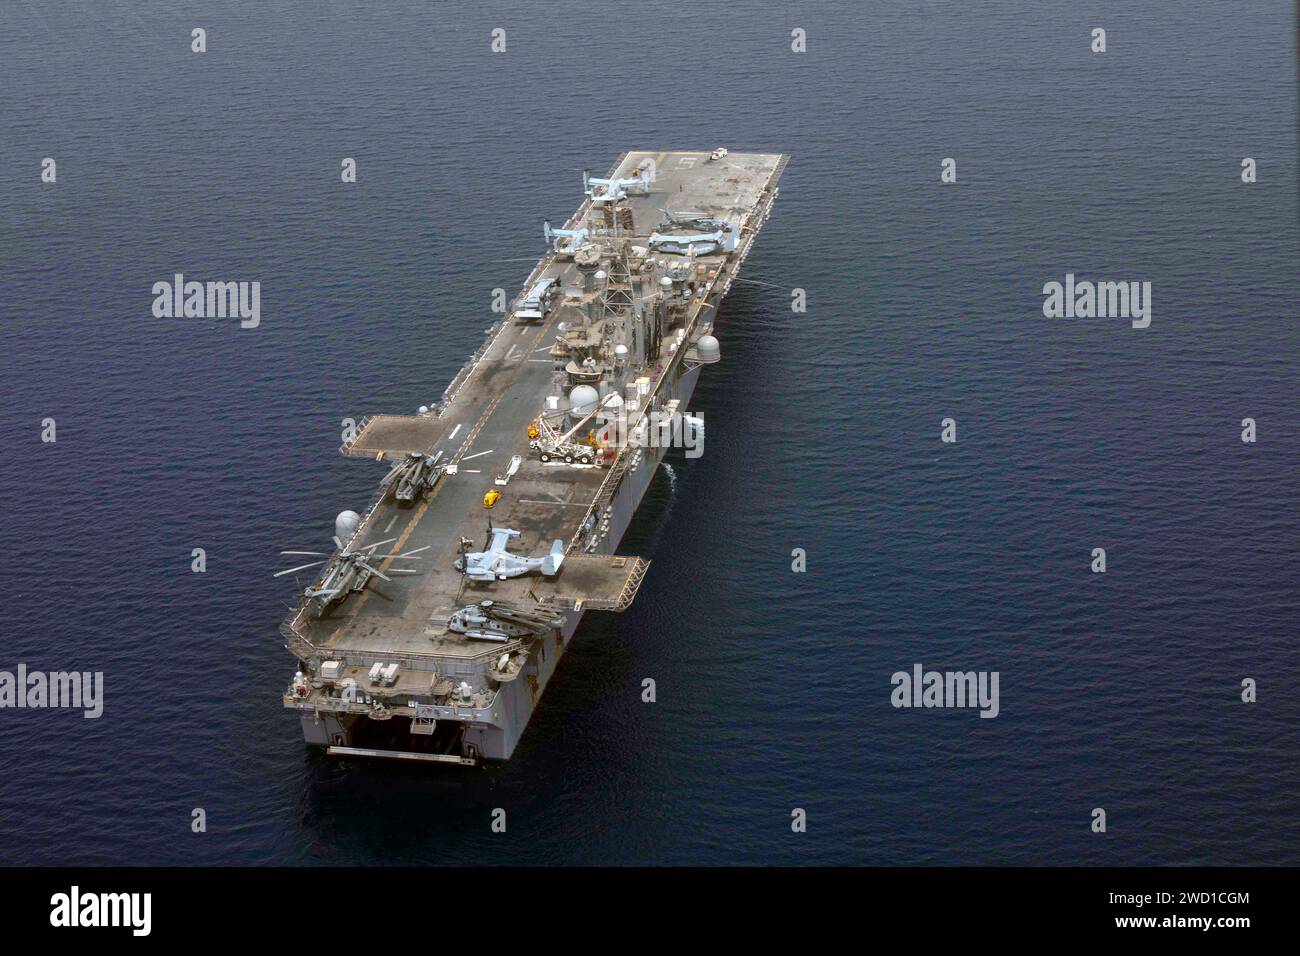 Le navire d'assaut amphibie USS Bataan transite dans la zone d'opérations de la 5e flotte américaine. Banque D'Images